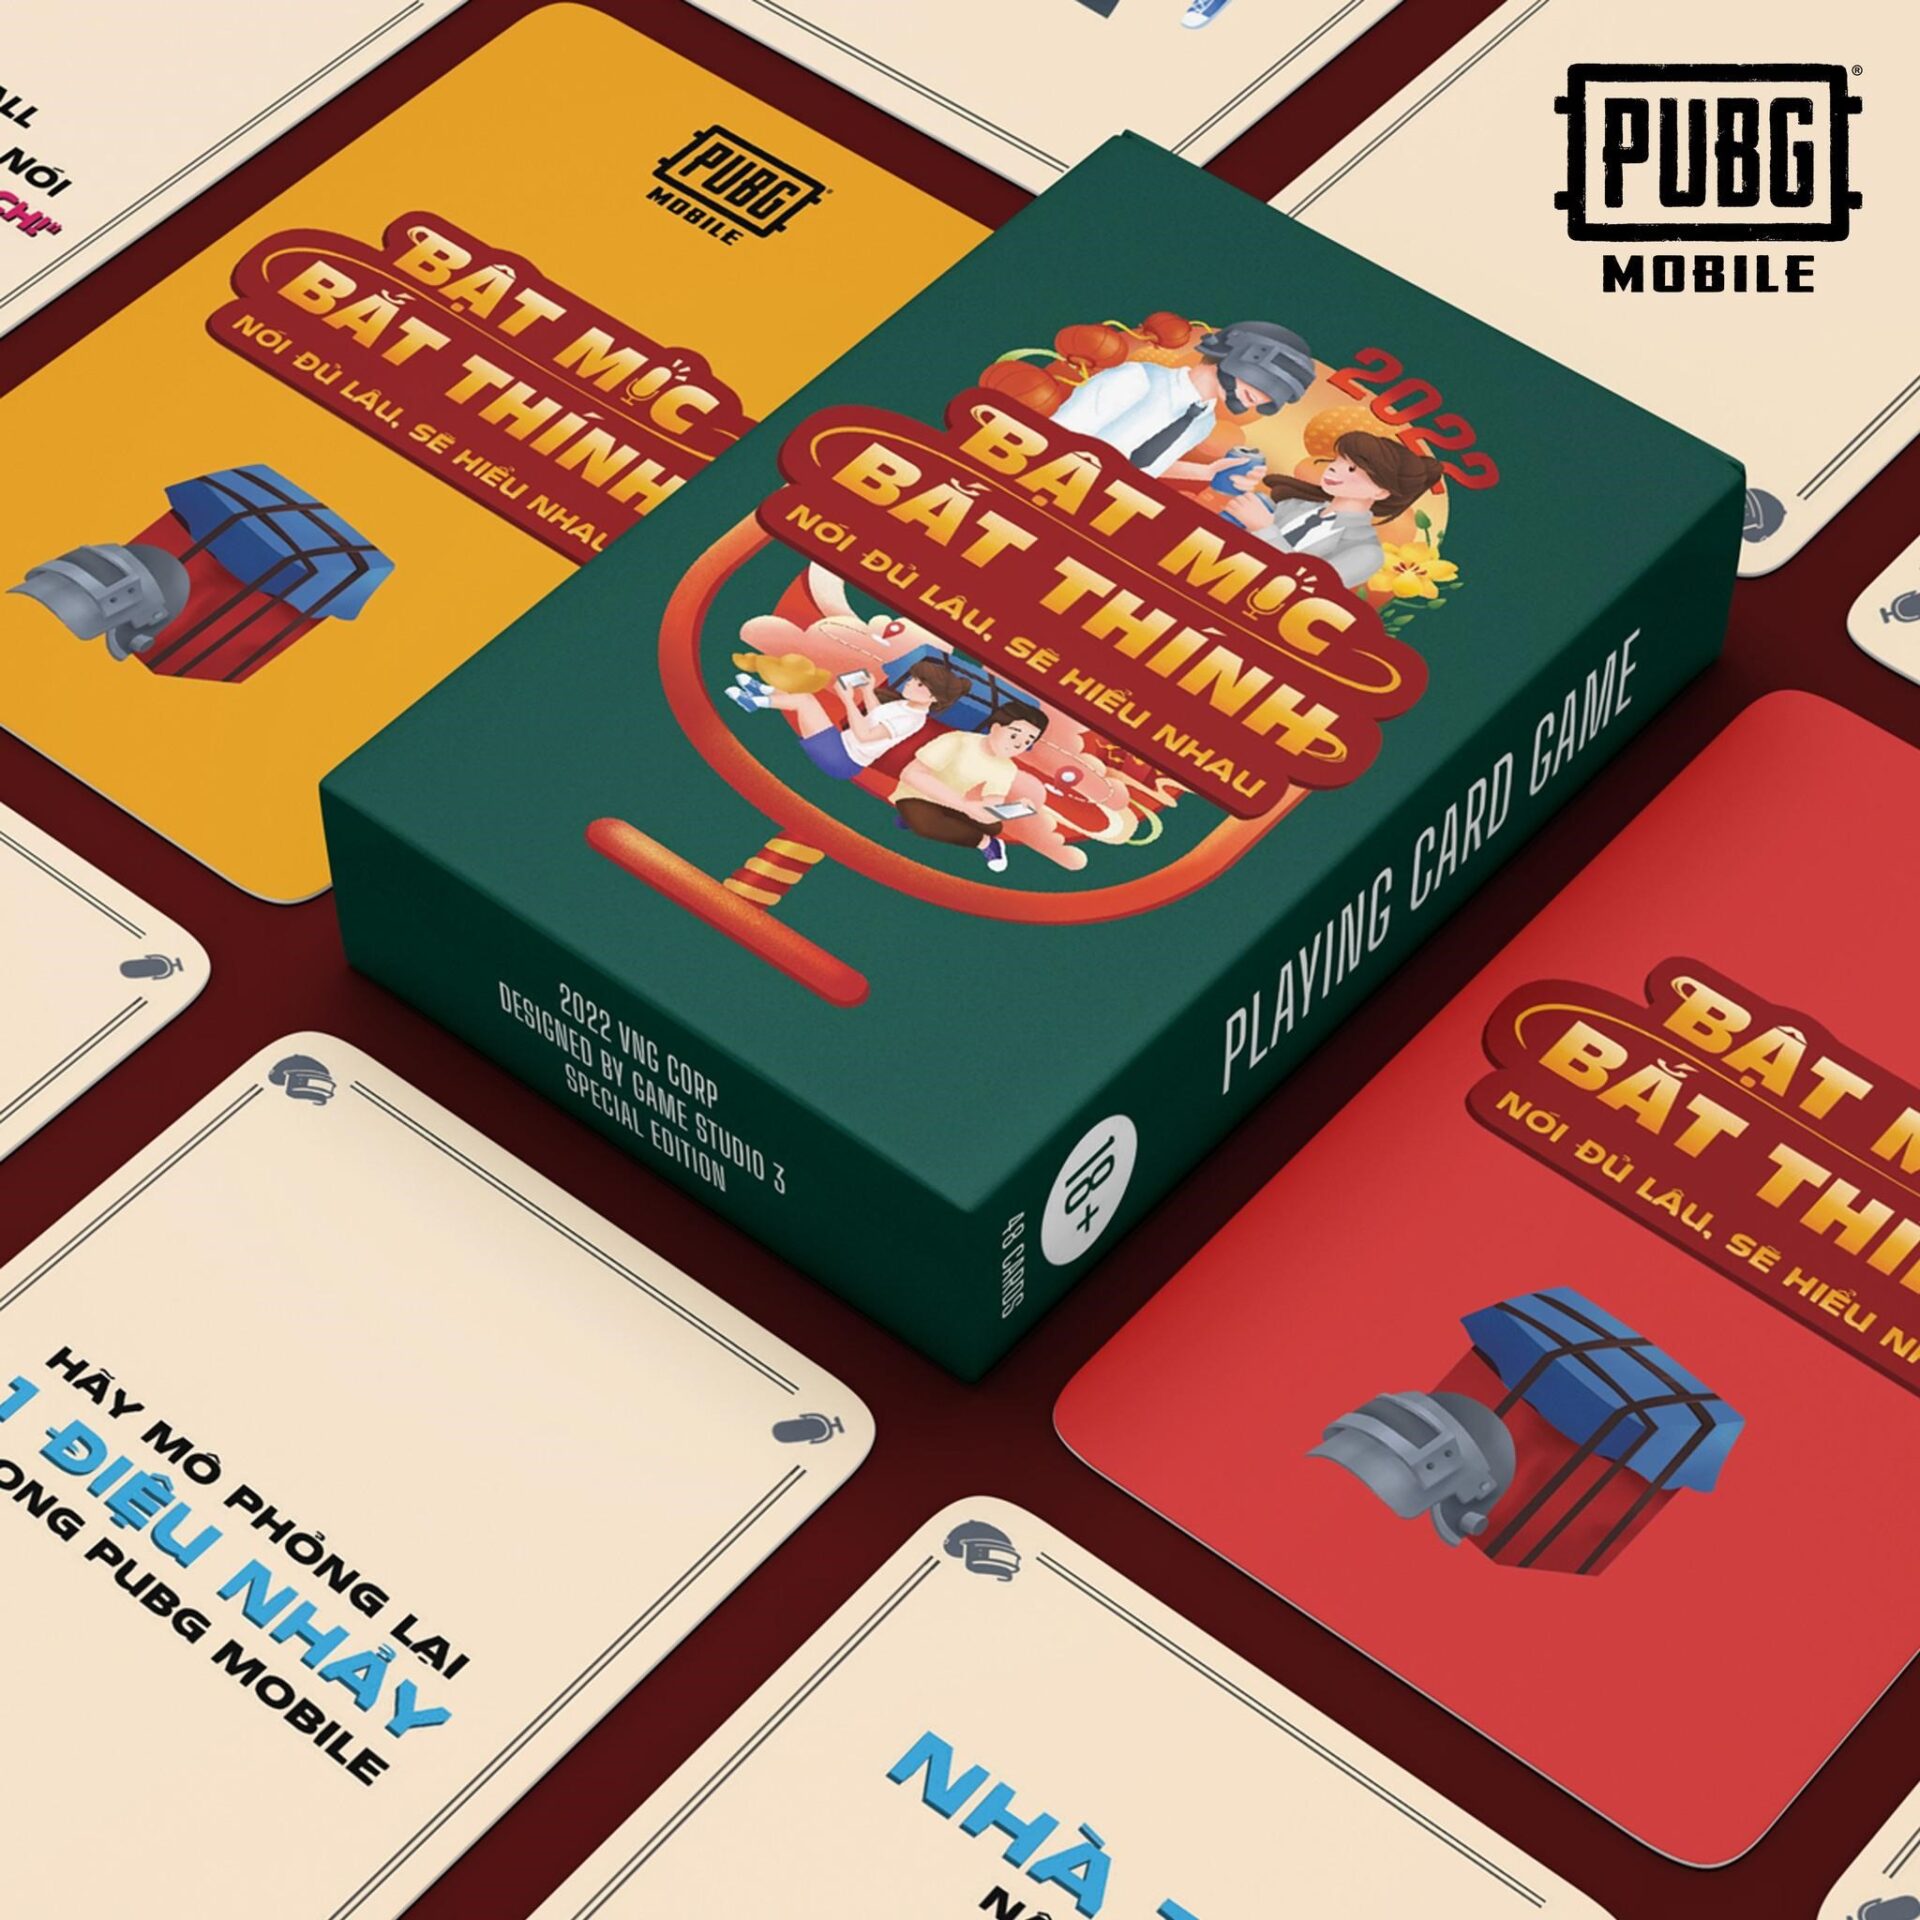 Cộng đồng PUBG Mobile VN đón Tết bằng bộ boardgame siêu đặc biệt